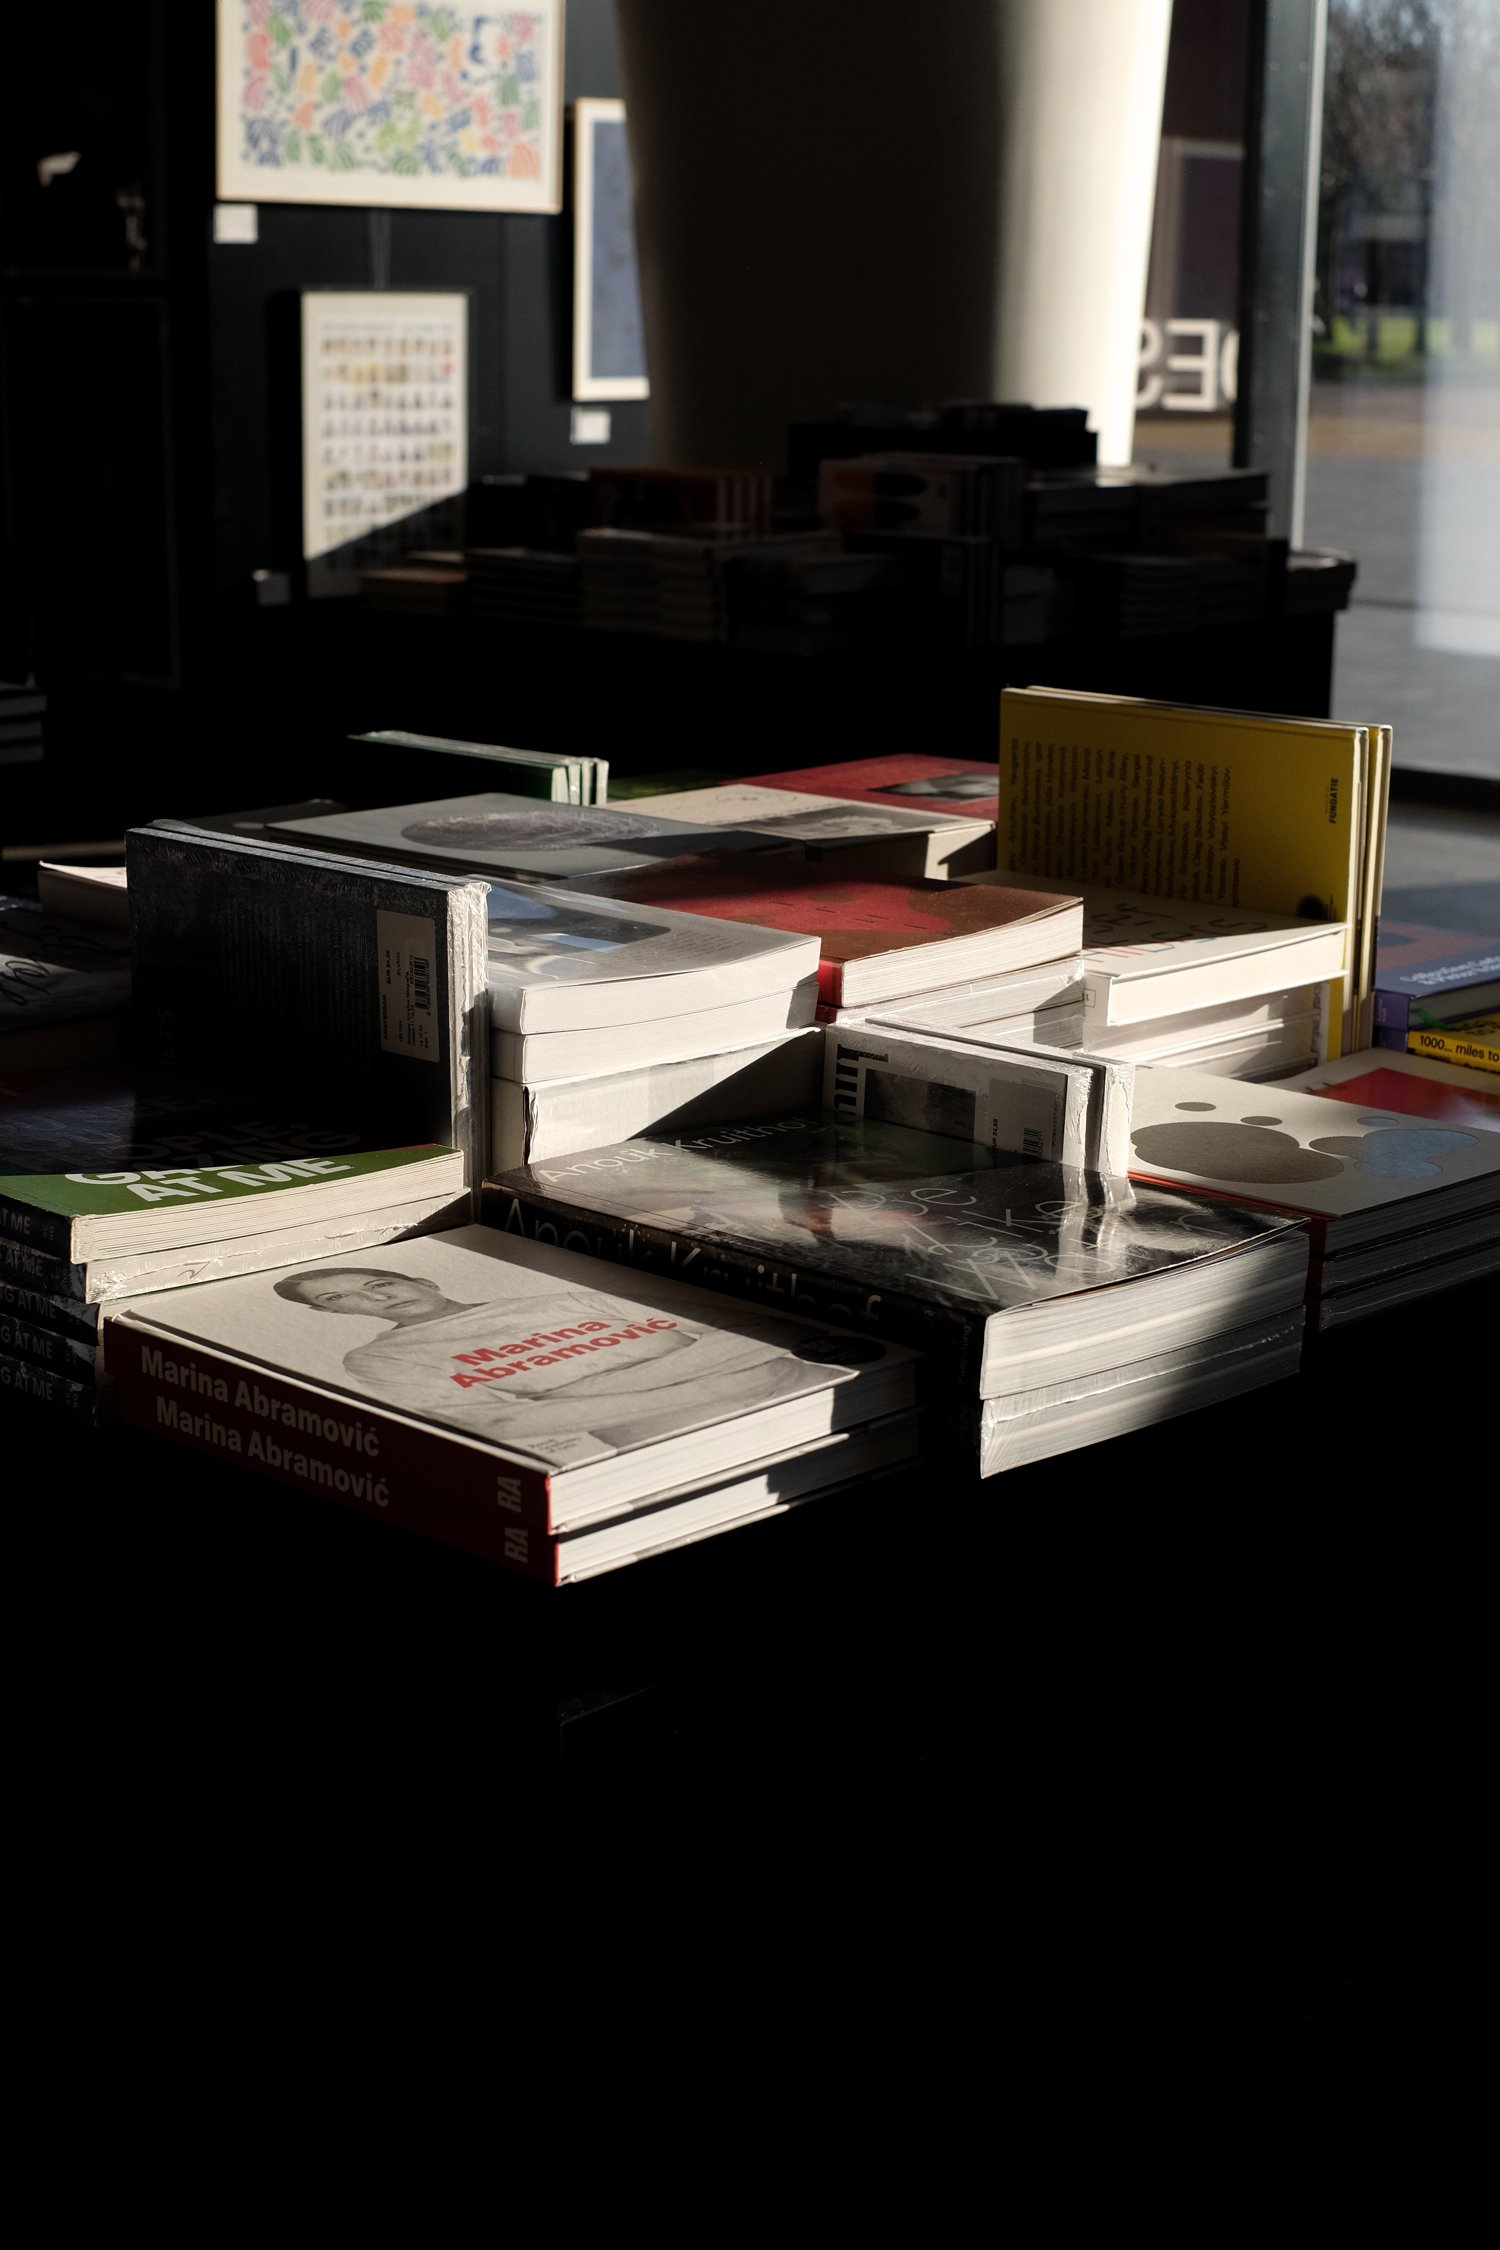 Stedelijk_Books.jpg